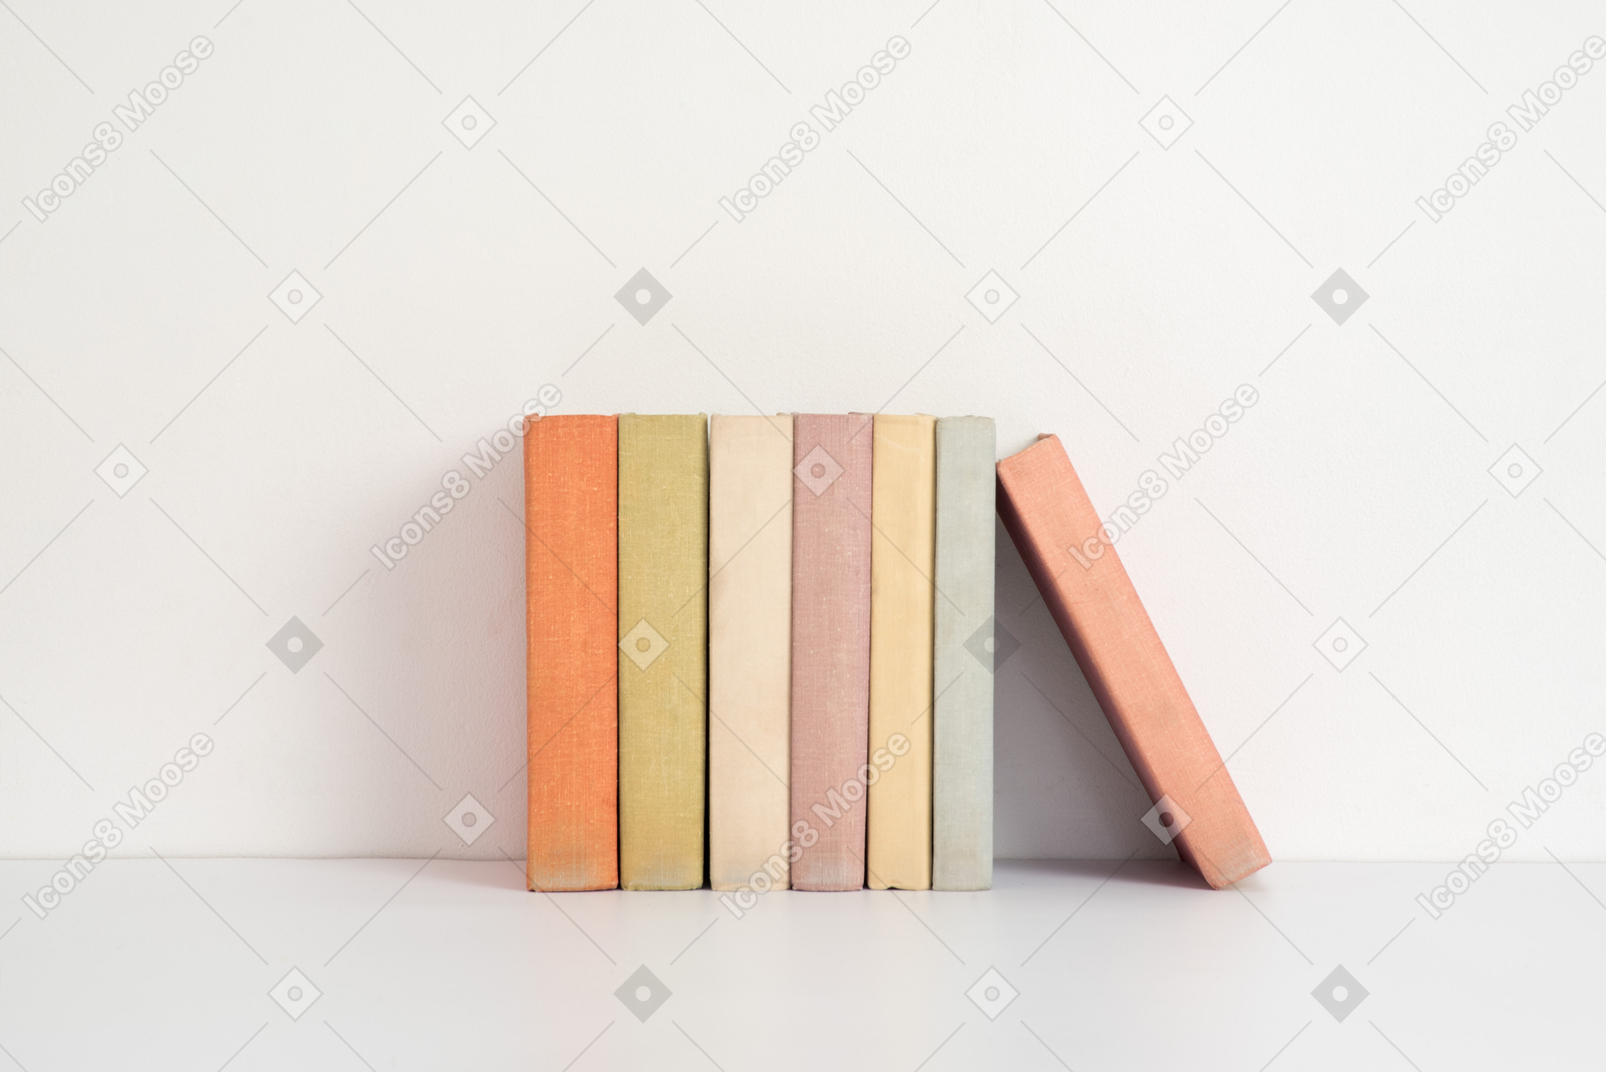 Livros em uma fileira com um livro em destaque